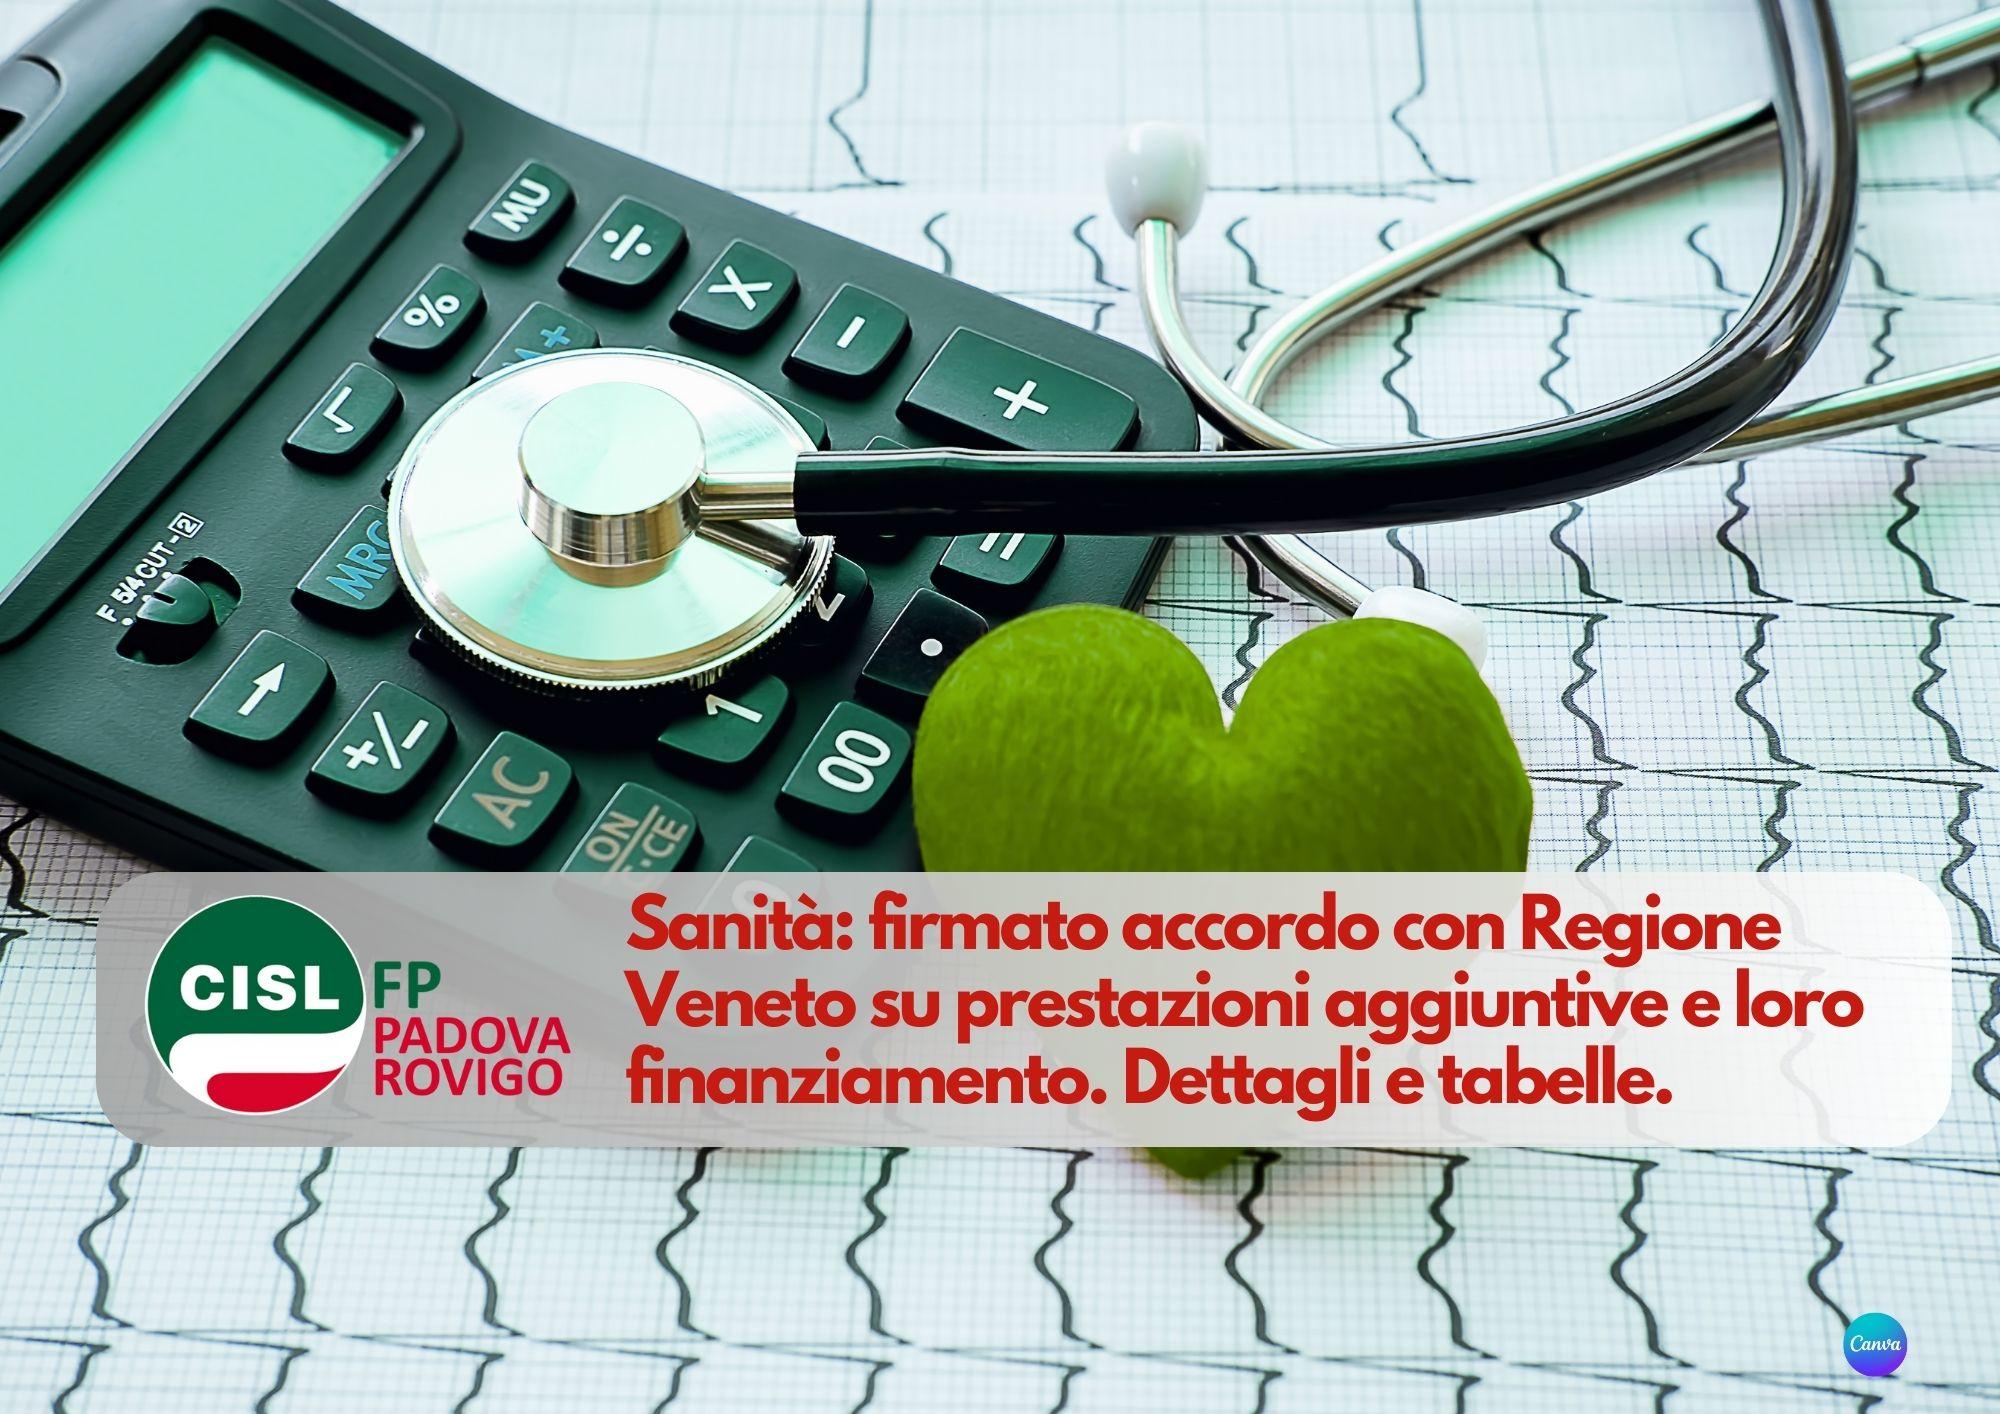 CISL FP Padova Rovigo. Sanità: firmato accordo Regione Veneto prestazioni aggiuntive e loro finanziamento